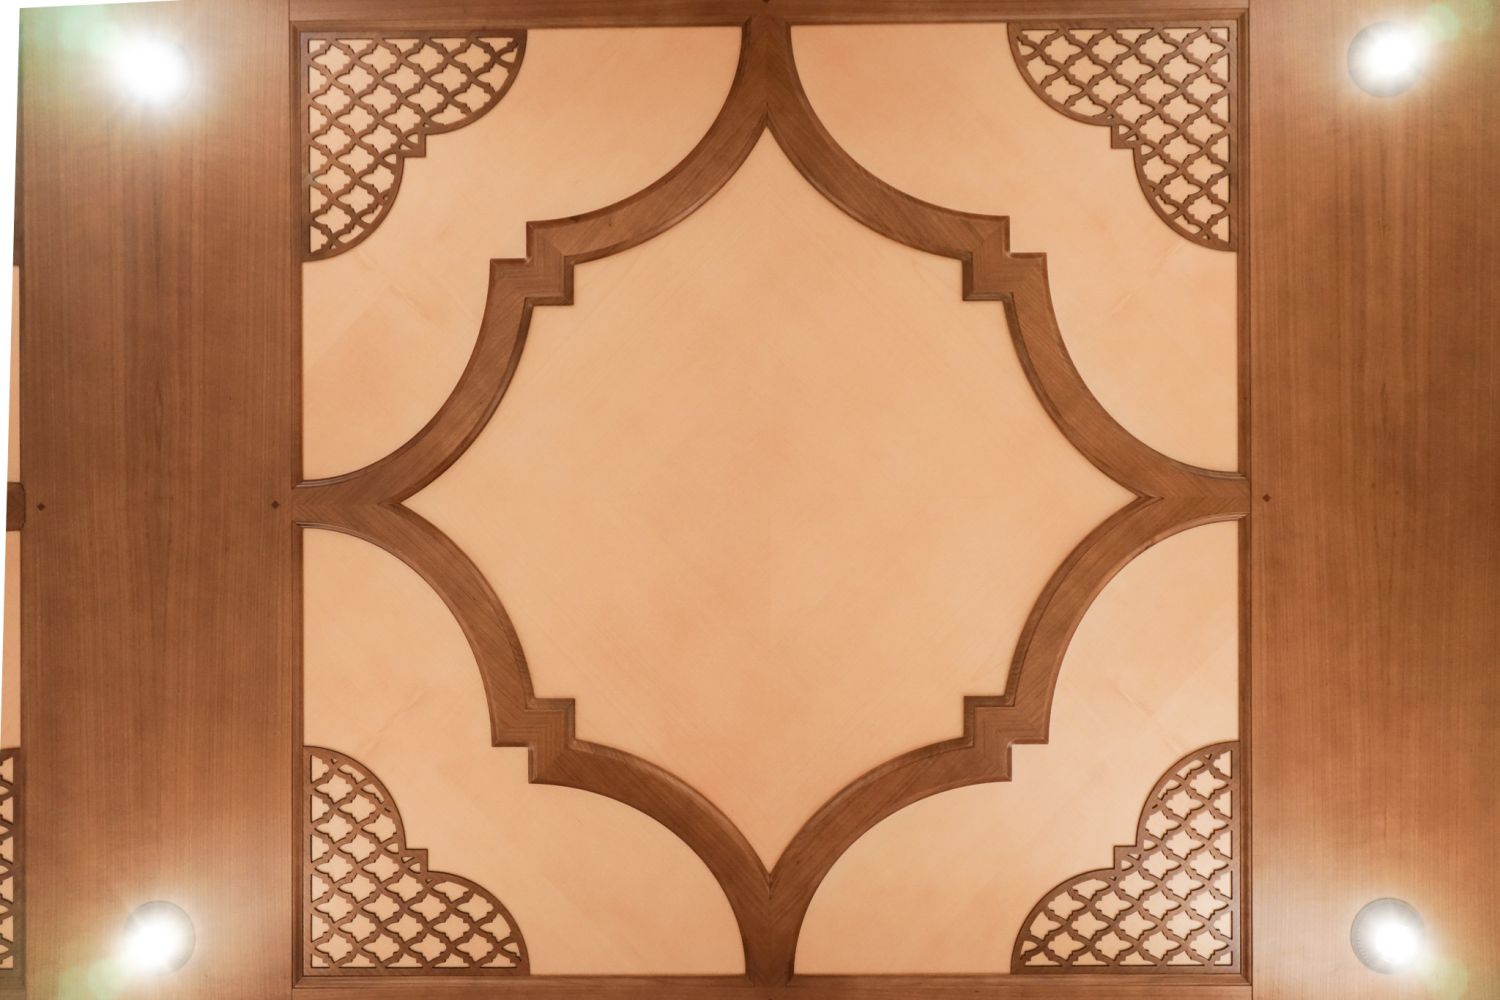 Maurische-deckengestaltung-aus-kirschholz-mit-intarsien-aus-pappelmaser-und-aufwaendigen-ornamenten-und-kielboegen